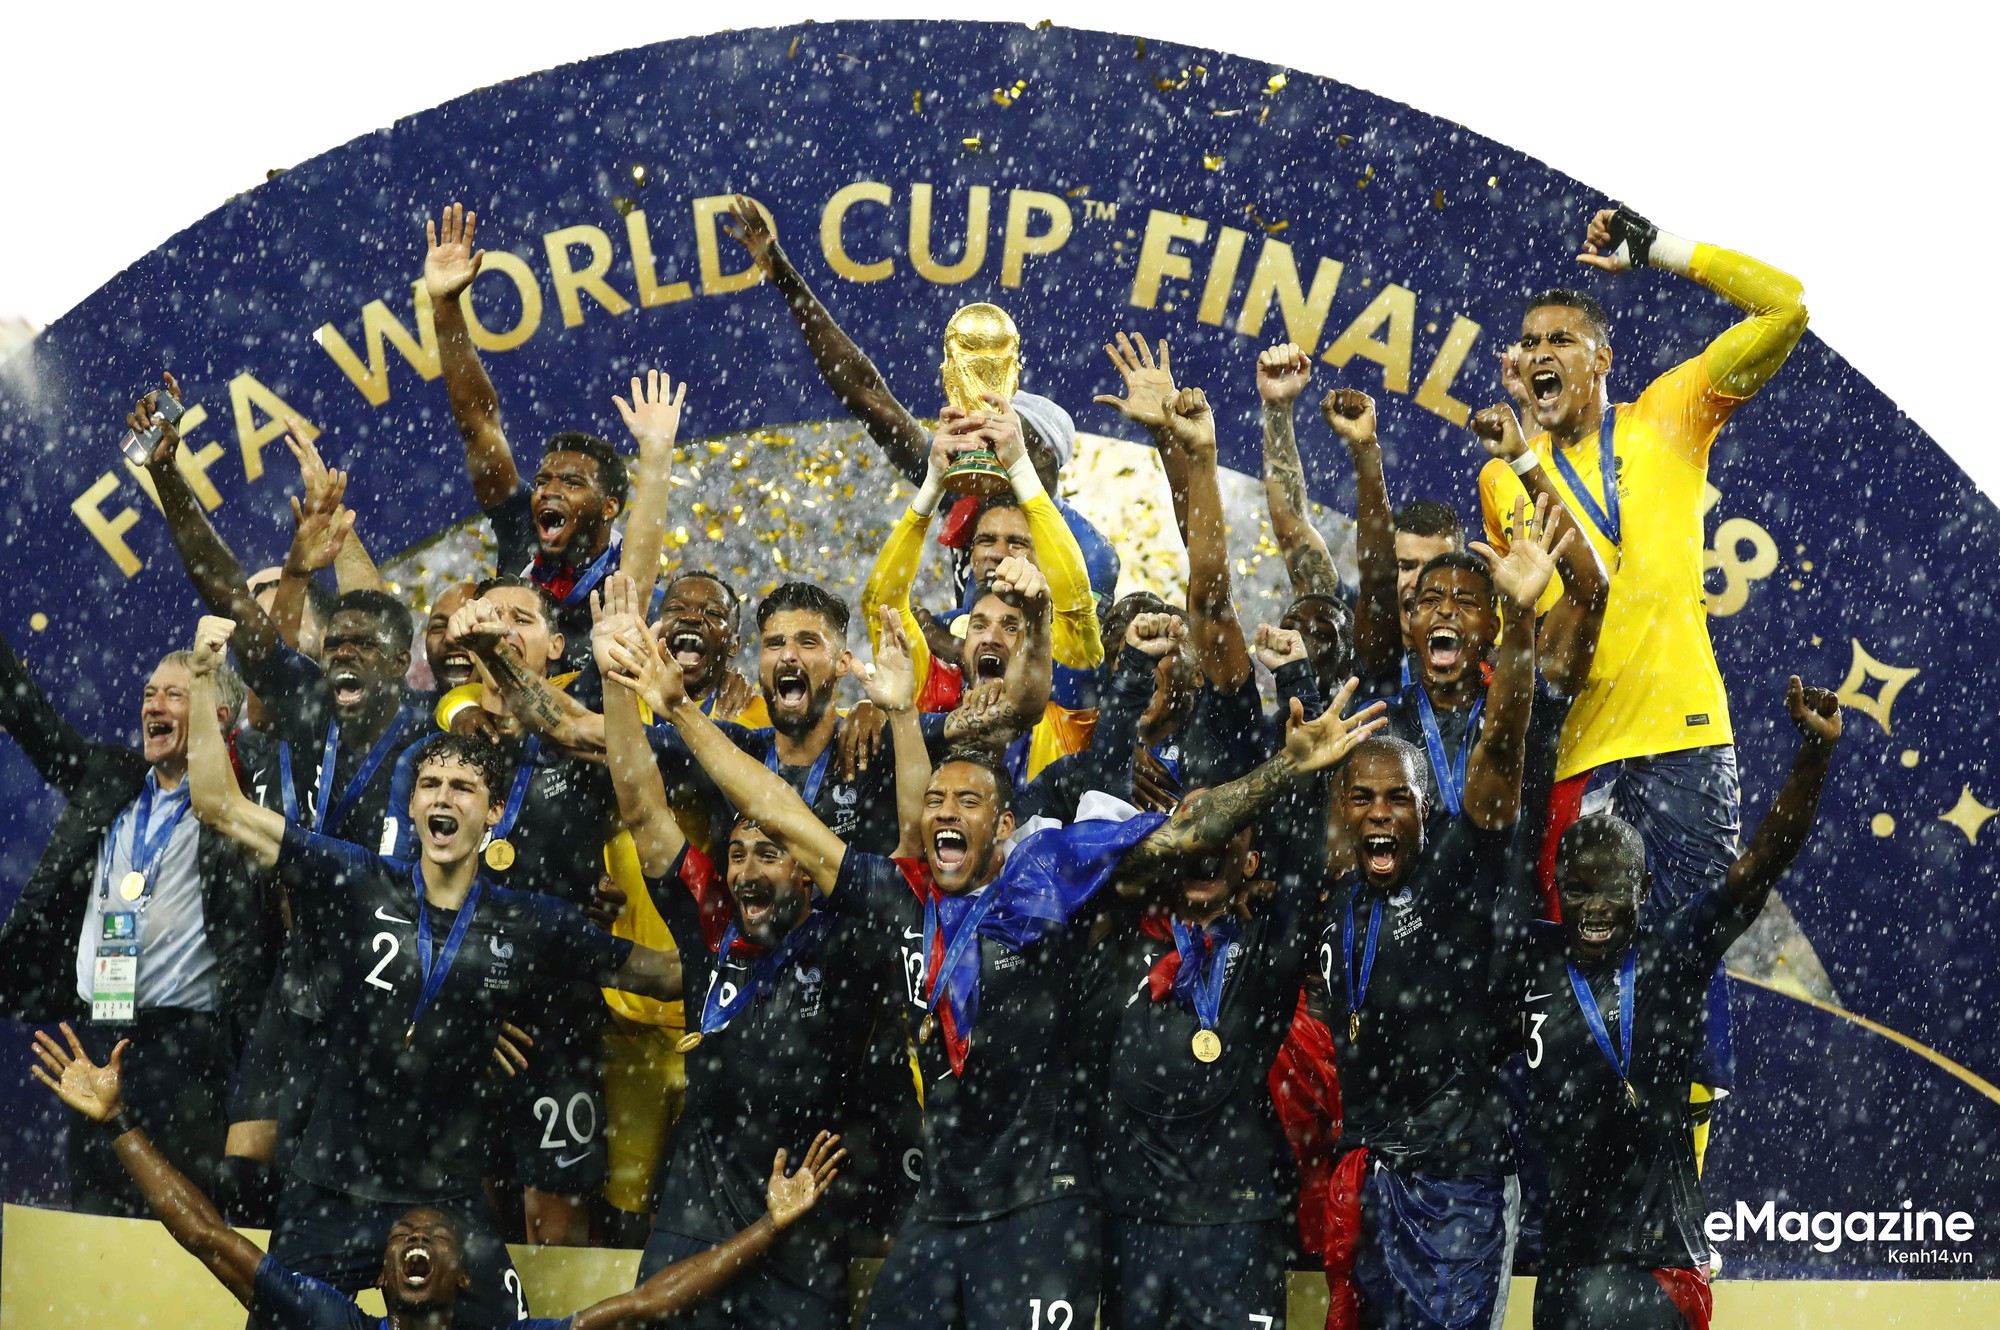 Vô địch World Cup 2018, khởi đầu cho kỷ nguyên vàng nước Pháp - Ảnh 18.